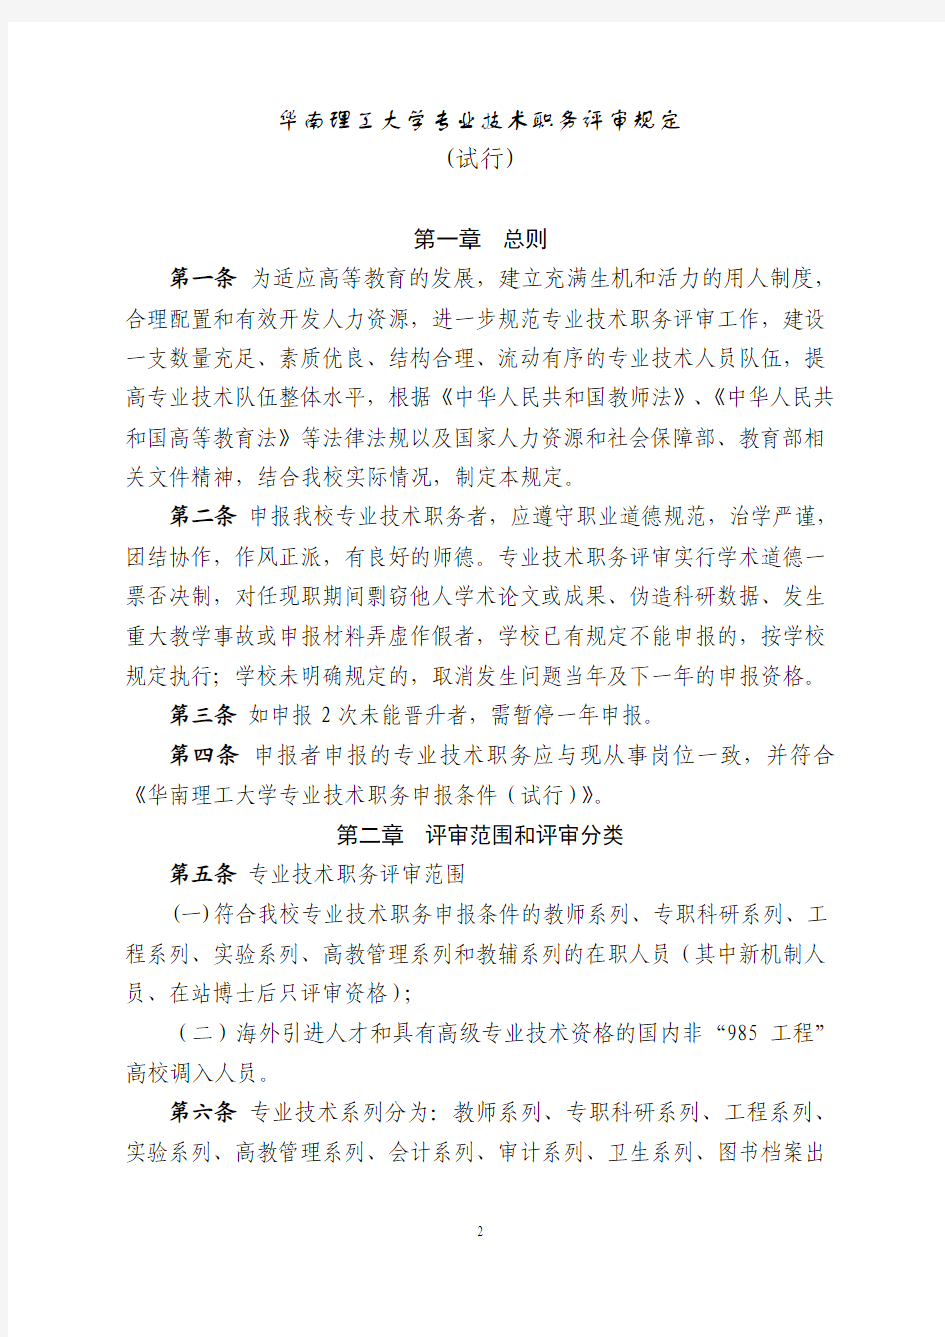 华南理工大学专业技术职务评审规定(试行)